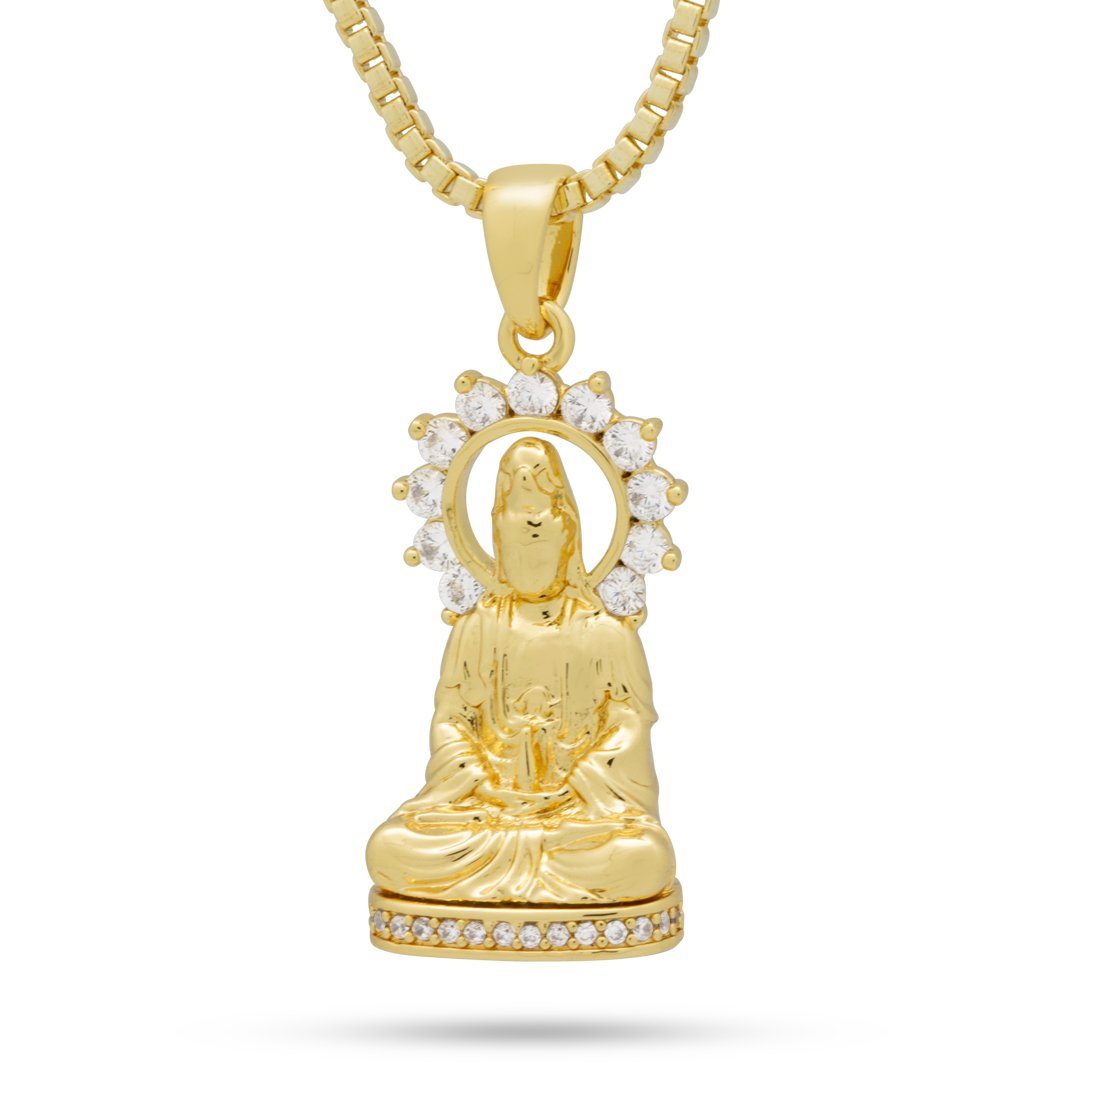 Shiva Enlighten Buudda Necklace